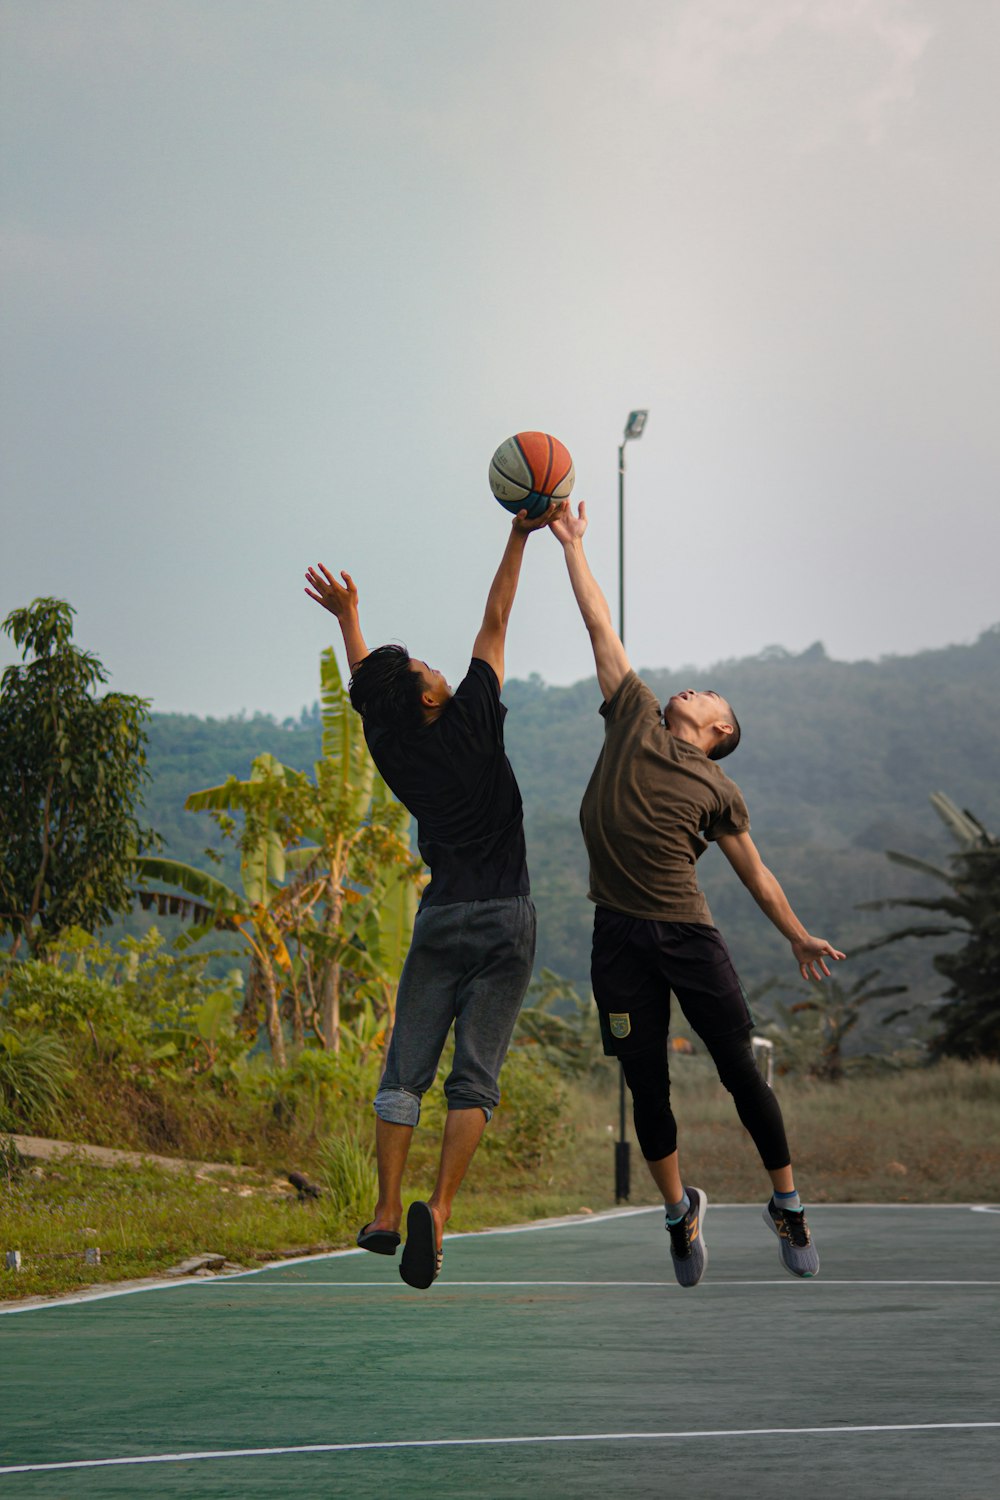 バスケットボールコートでバスケットボールをする2人の若い男性